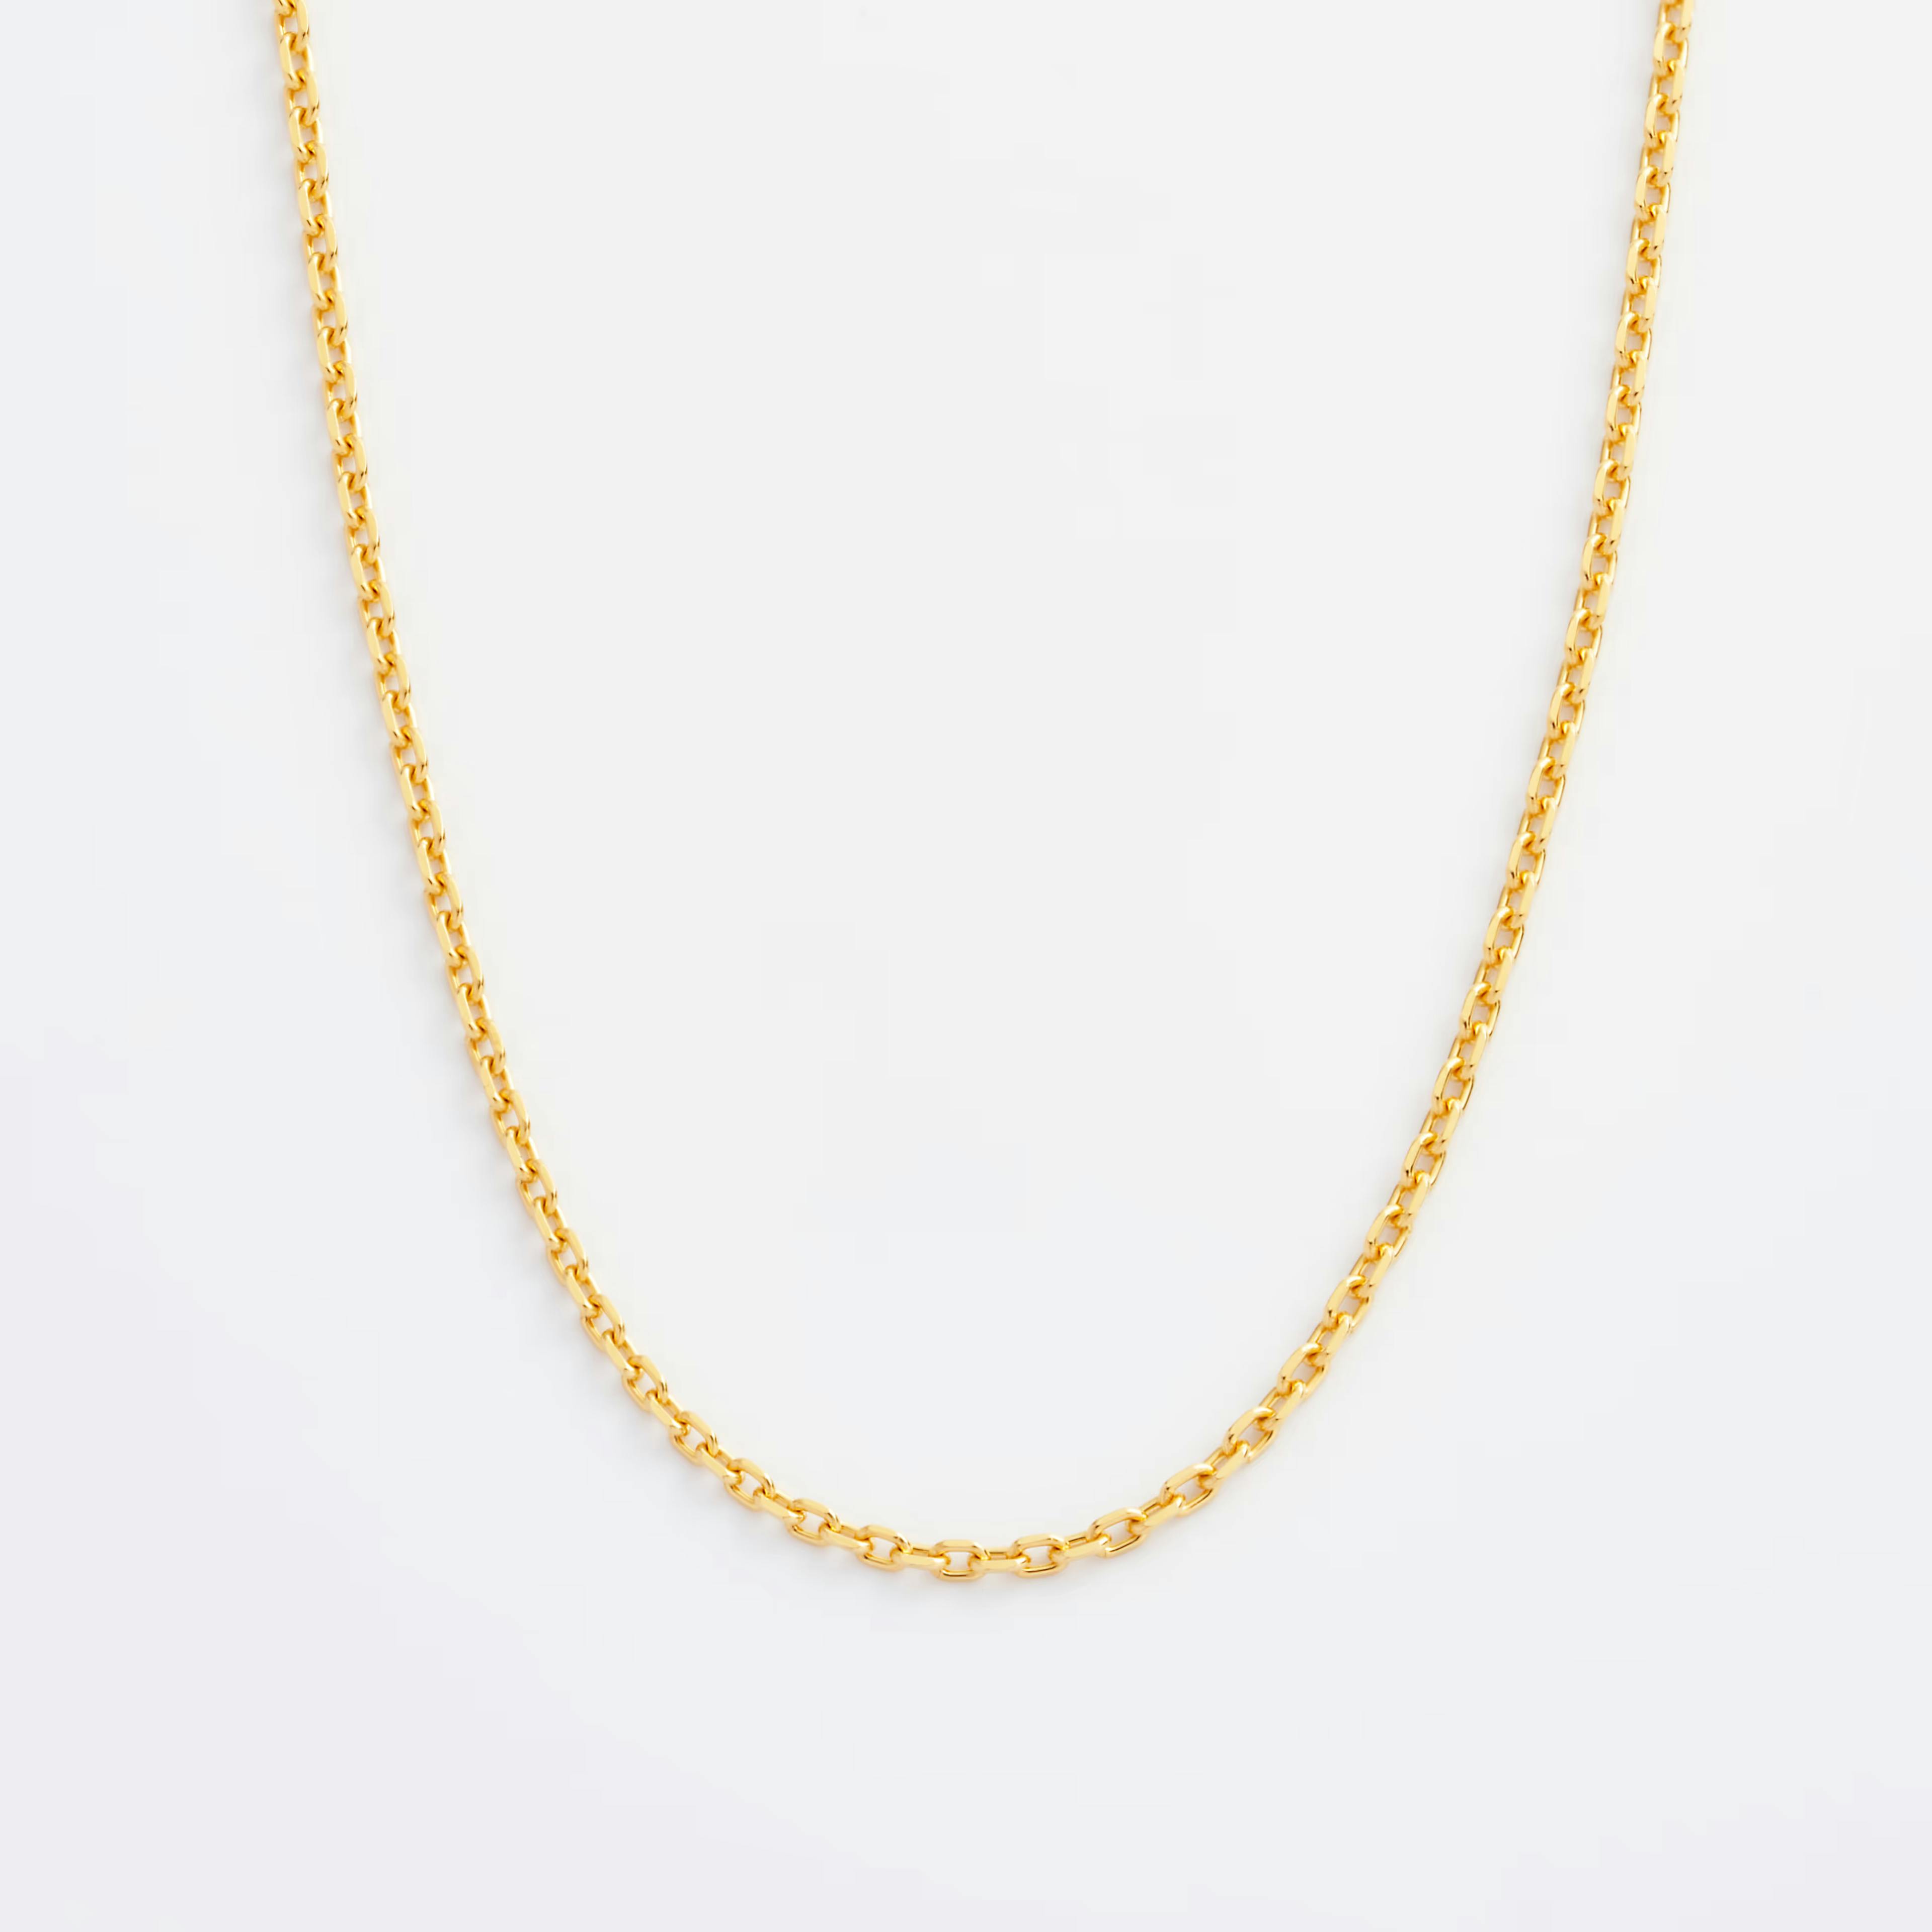 Shop gold Necklaces Wide Diamond Cut Cable Chain Necklace